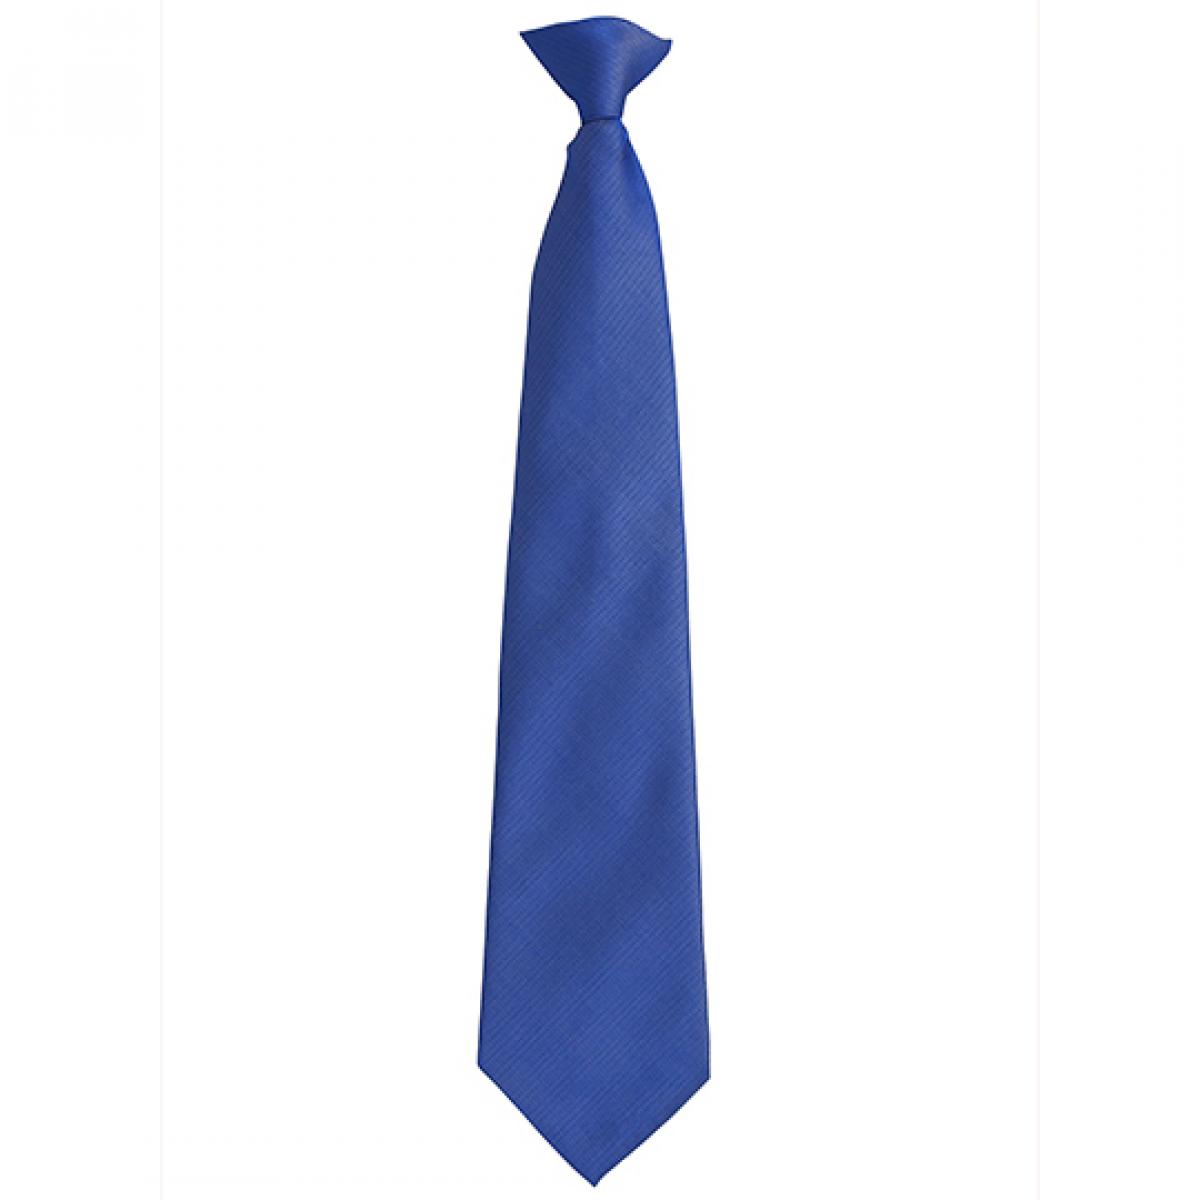 Hersteller: Premier Workwear Herstellernummer: PR785 Artikelbezeichnung: ´Colours´ Fashion Clip Tie Farbe: Royal (ca. Pantone 661C)